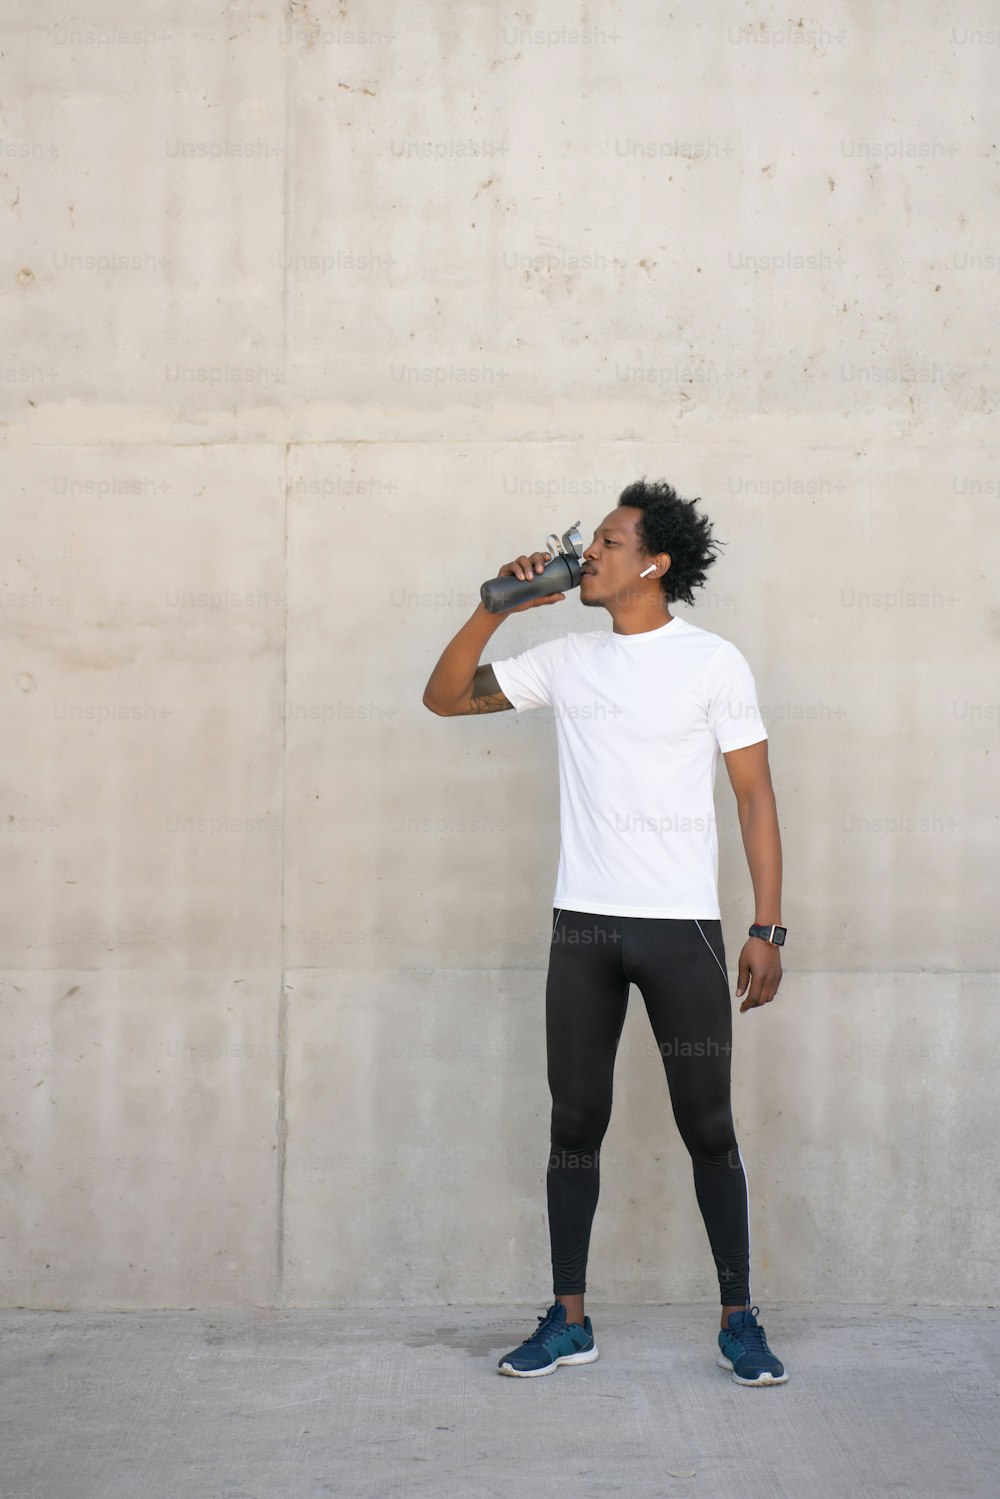 Uomo atletico afro che beve acqua e si rilassa dopo l'allenamento all'aperto. Concetto di sport e stile di vita sano.